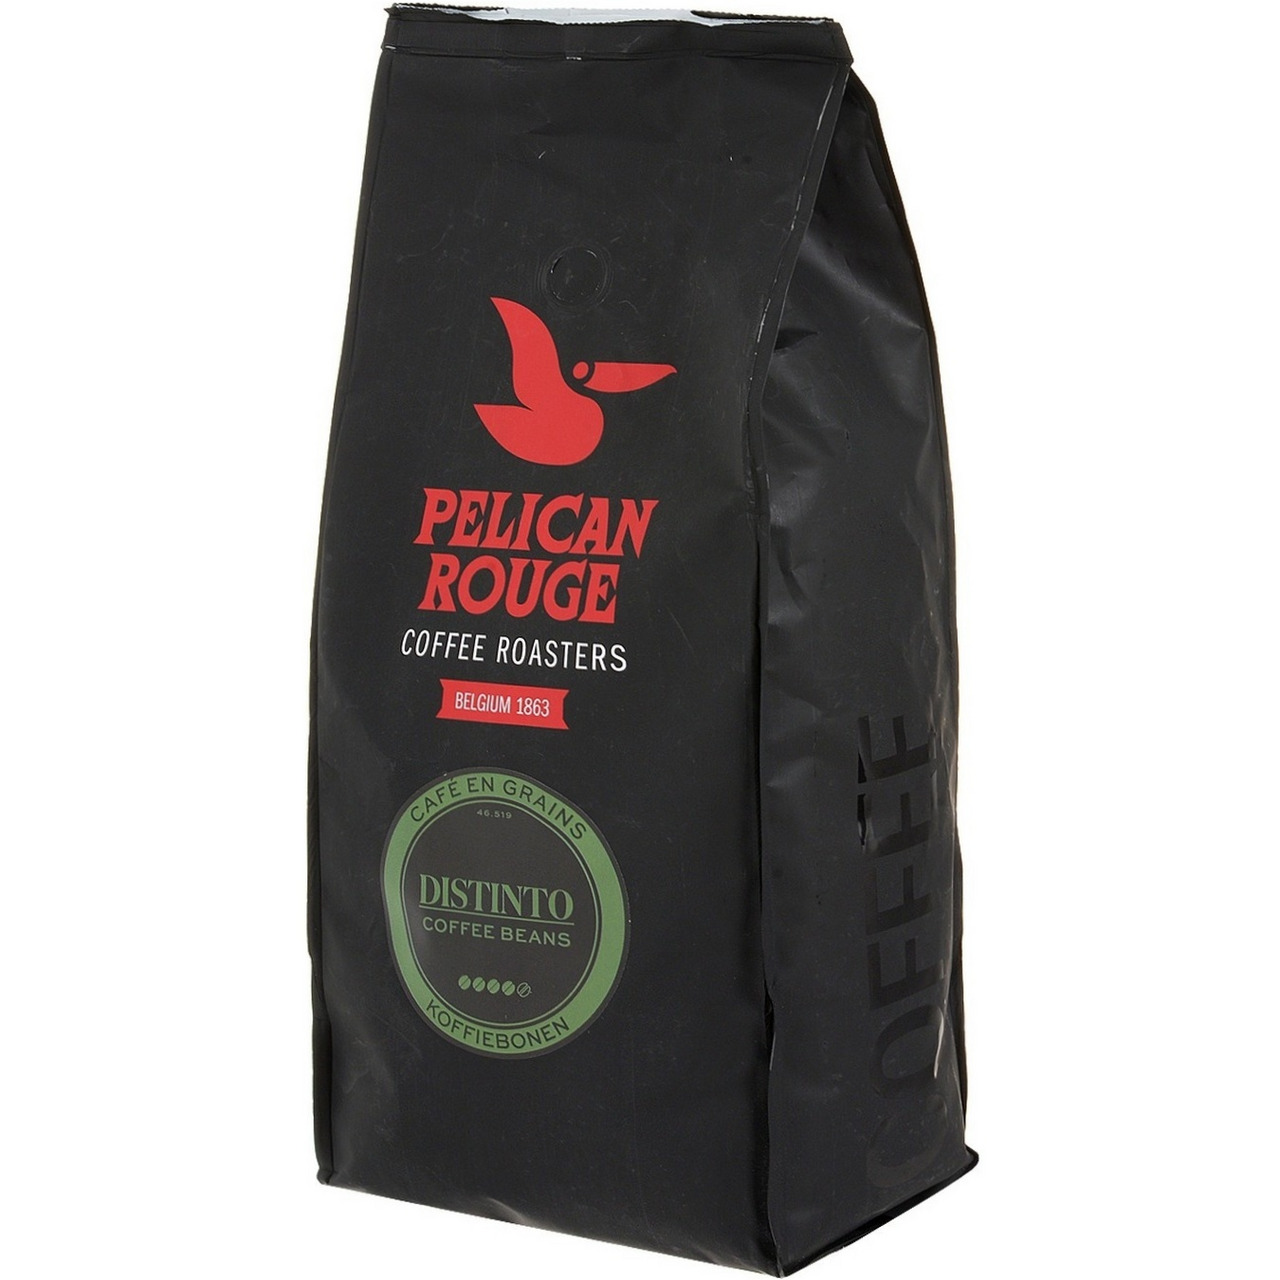 Купить зерновой кофе для кофемашины недорого. Pelican rouge кофе в зернах. Кофе в зернах Pelican rouge distinto. Кофе в зернах Pelican rouge "distinto" 1 кг. Кофе в зернах Pelican rouge Orfeo.